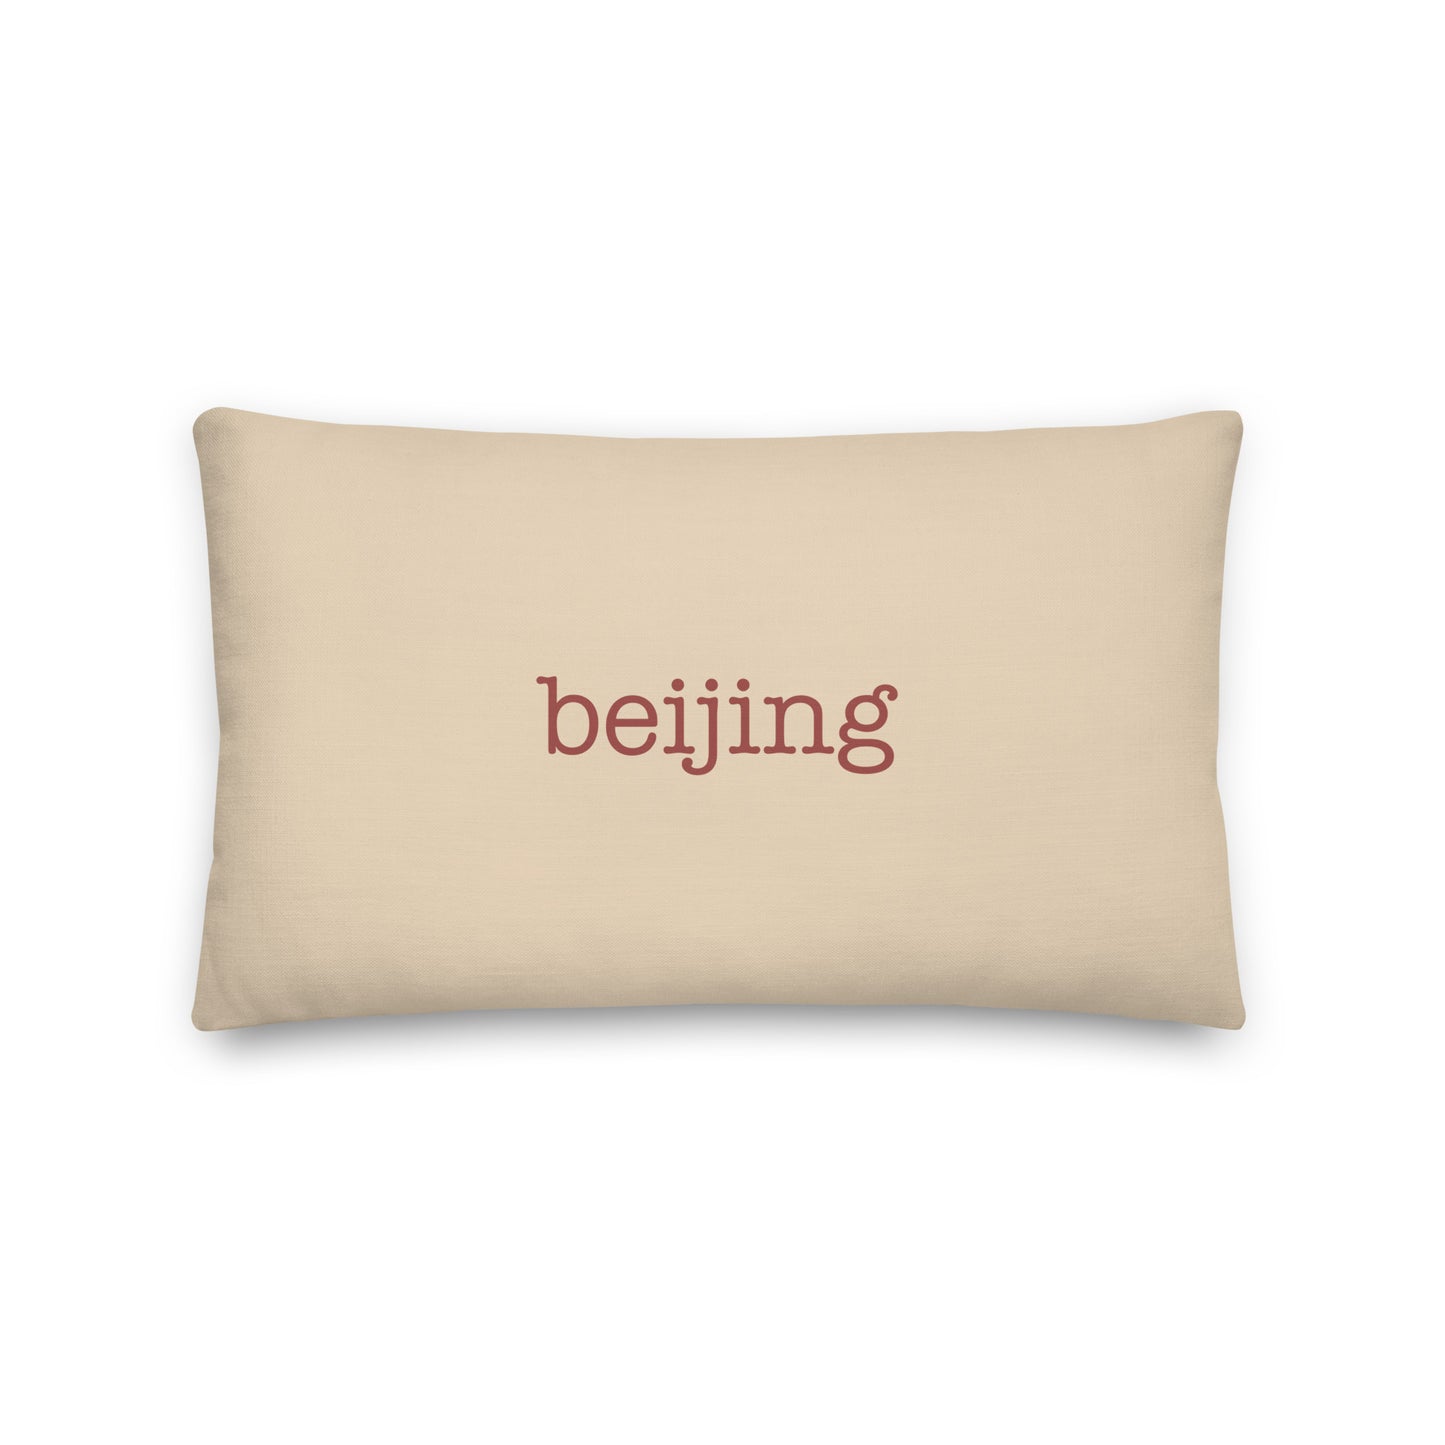 Typewriter Pillow - Terra Cotta • PEK Beijing • YHM Designs - Image 01